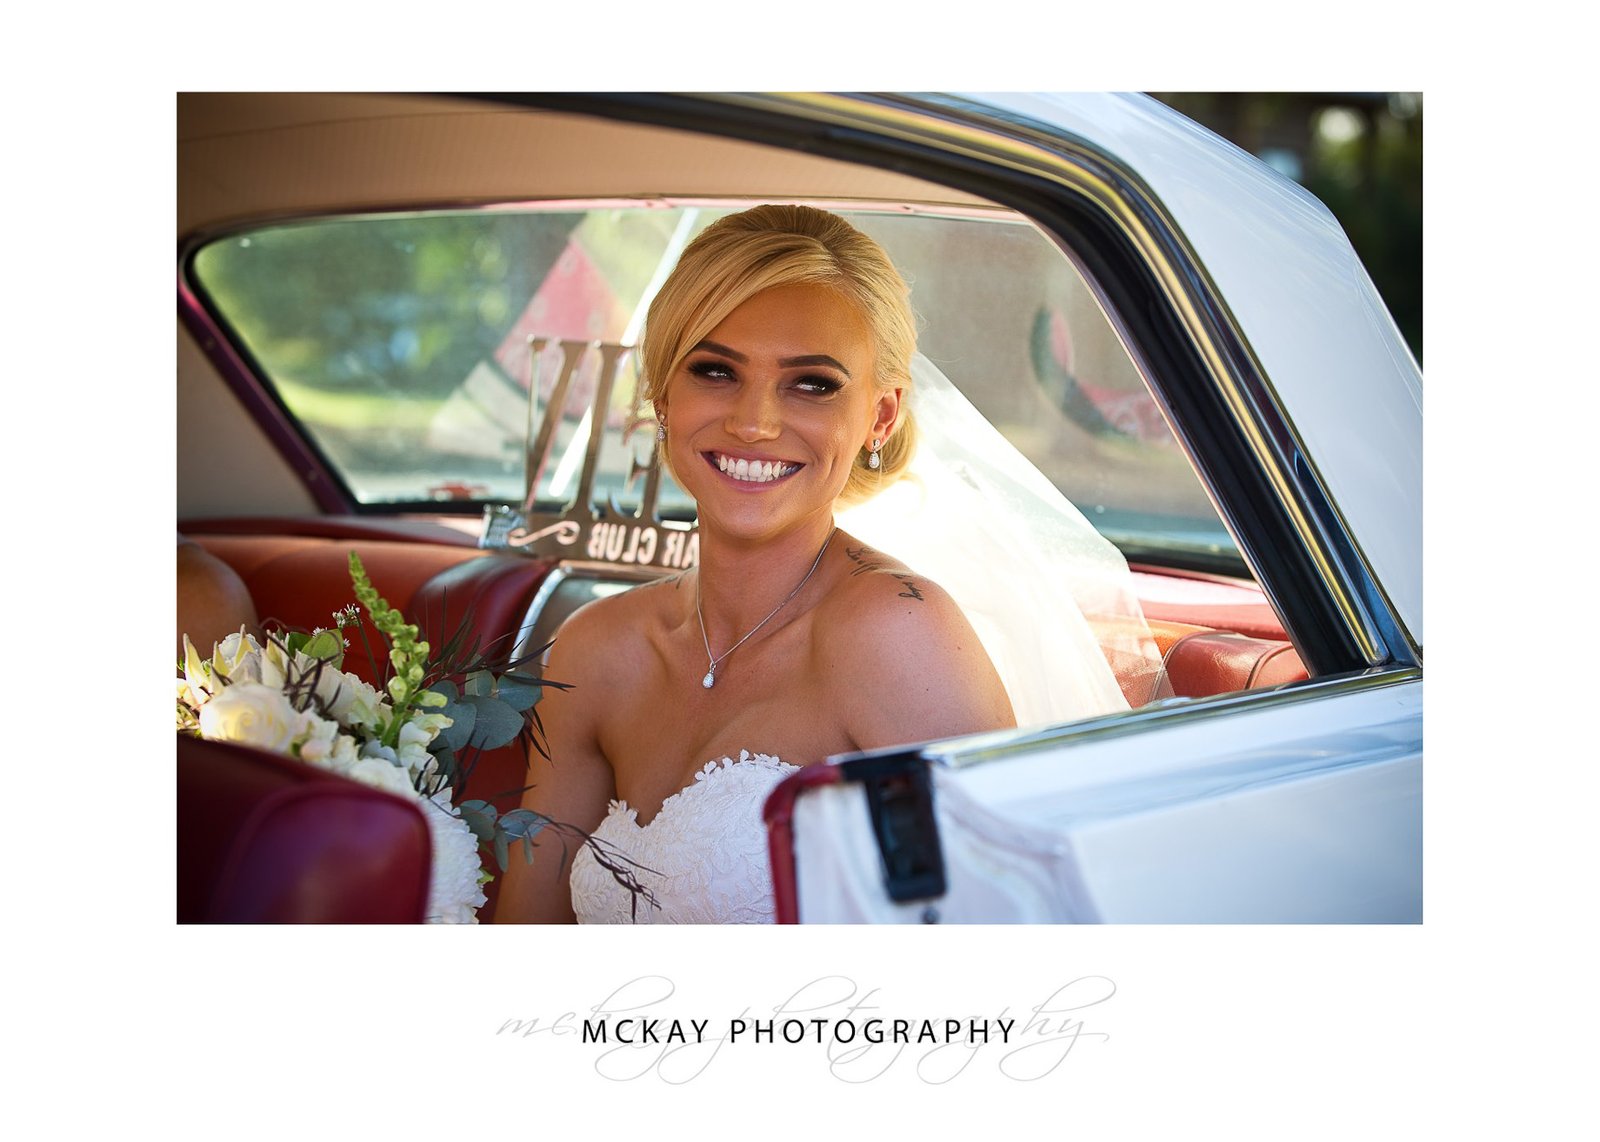 Ashlee arrives in a Chev Impala wedding car